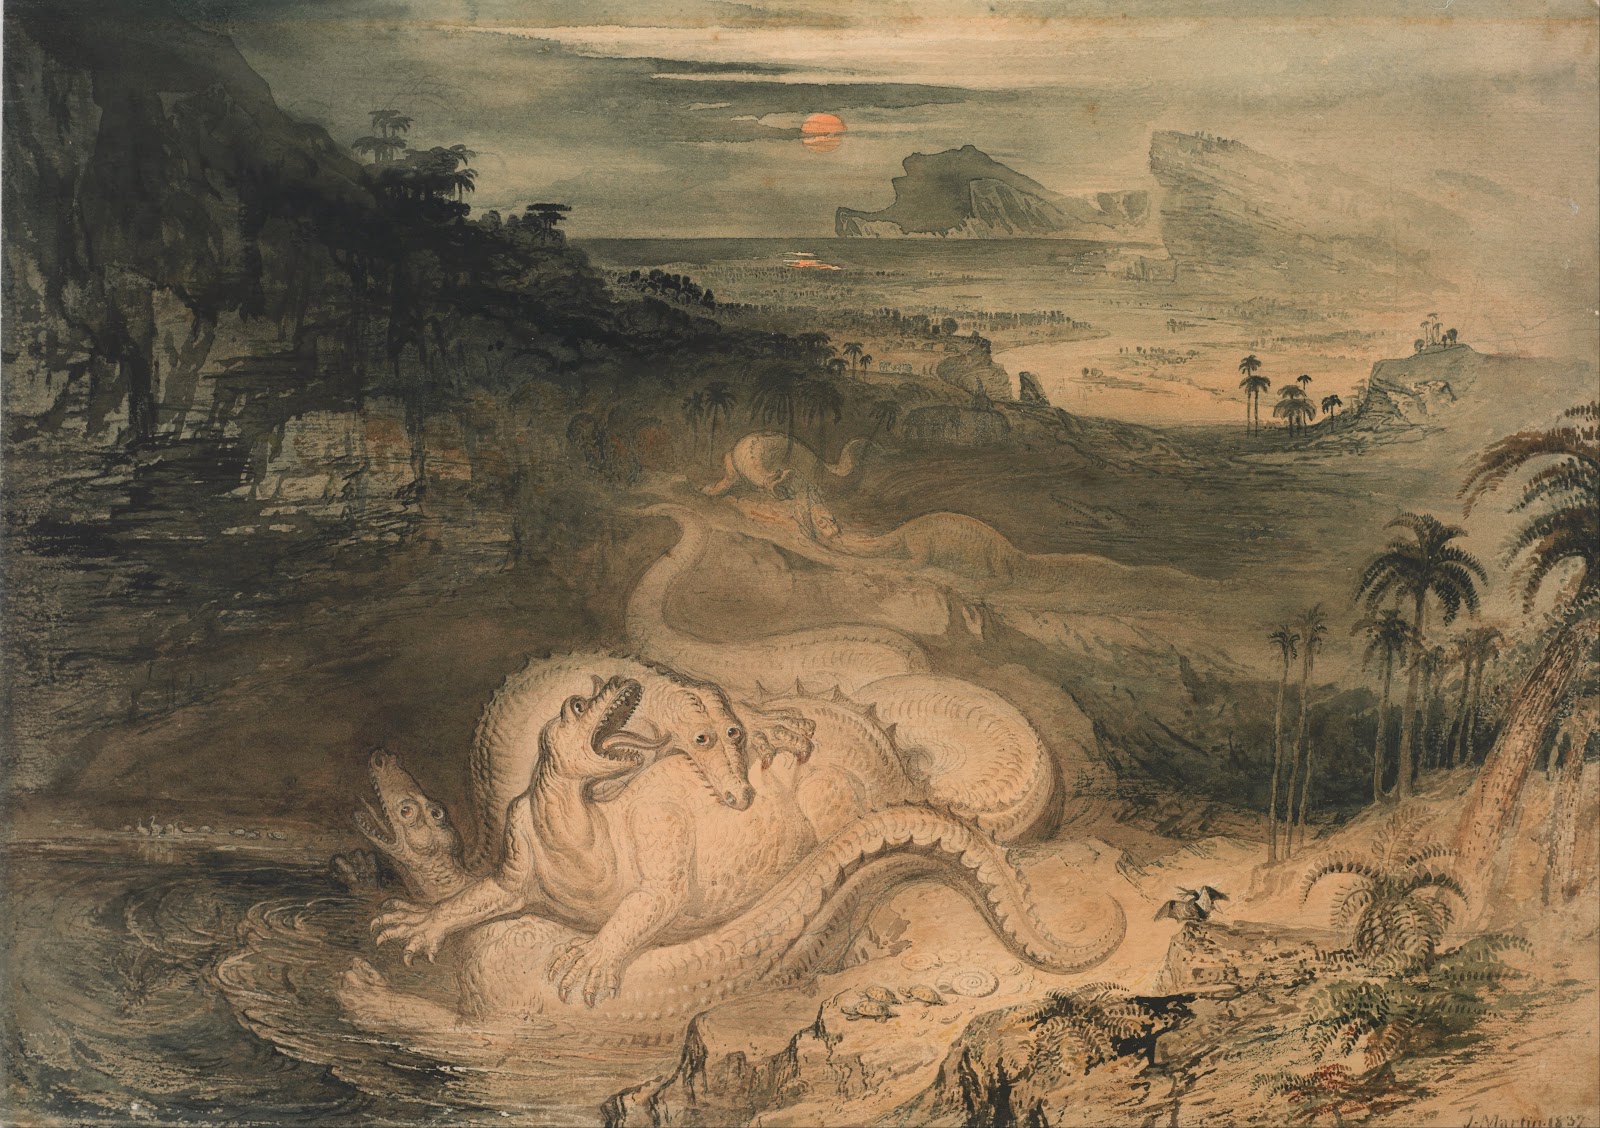 John+Martin+Landscape-1789-1854 (48).jpg